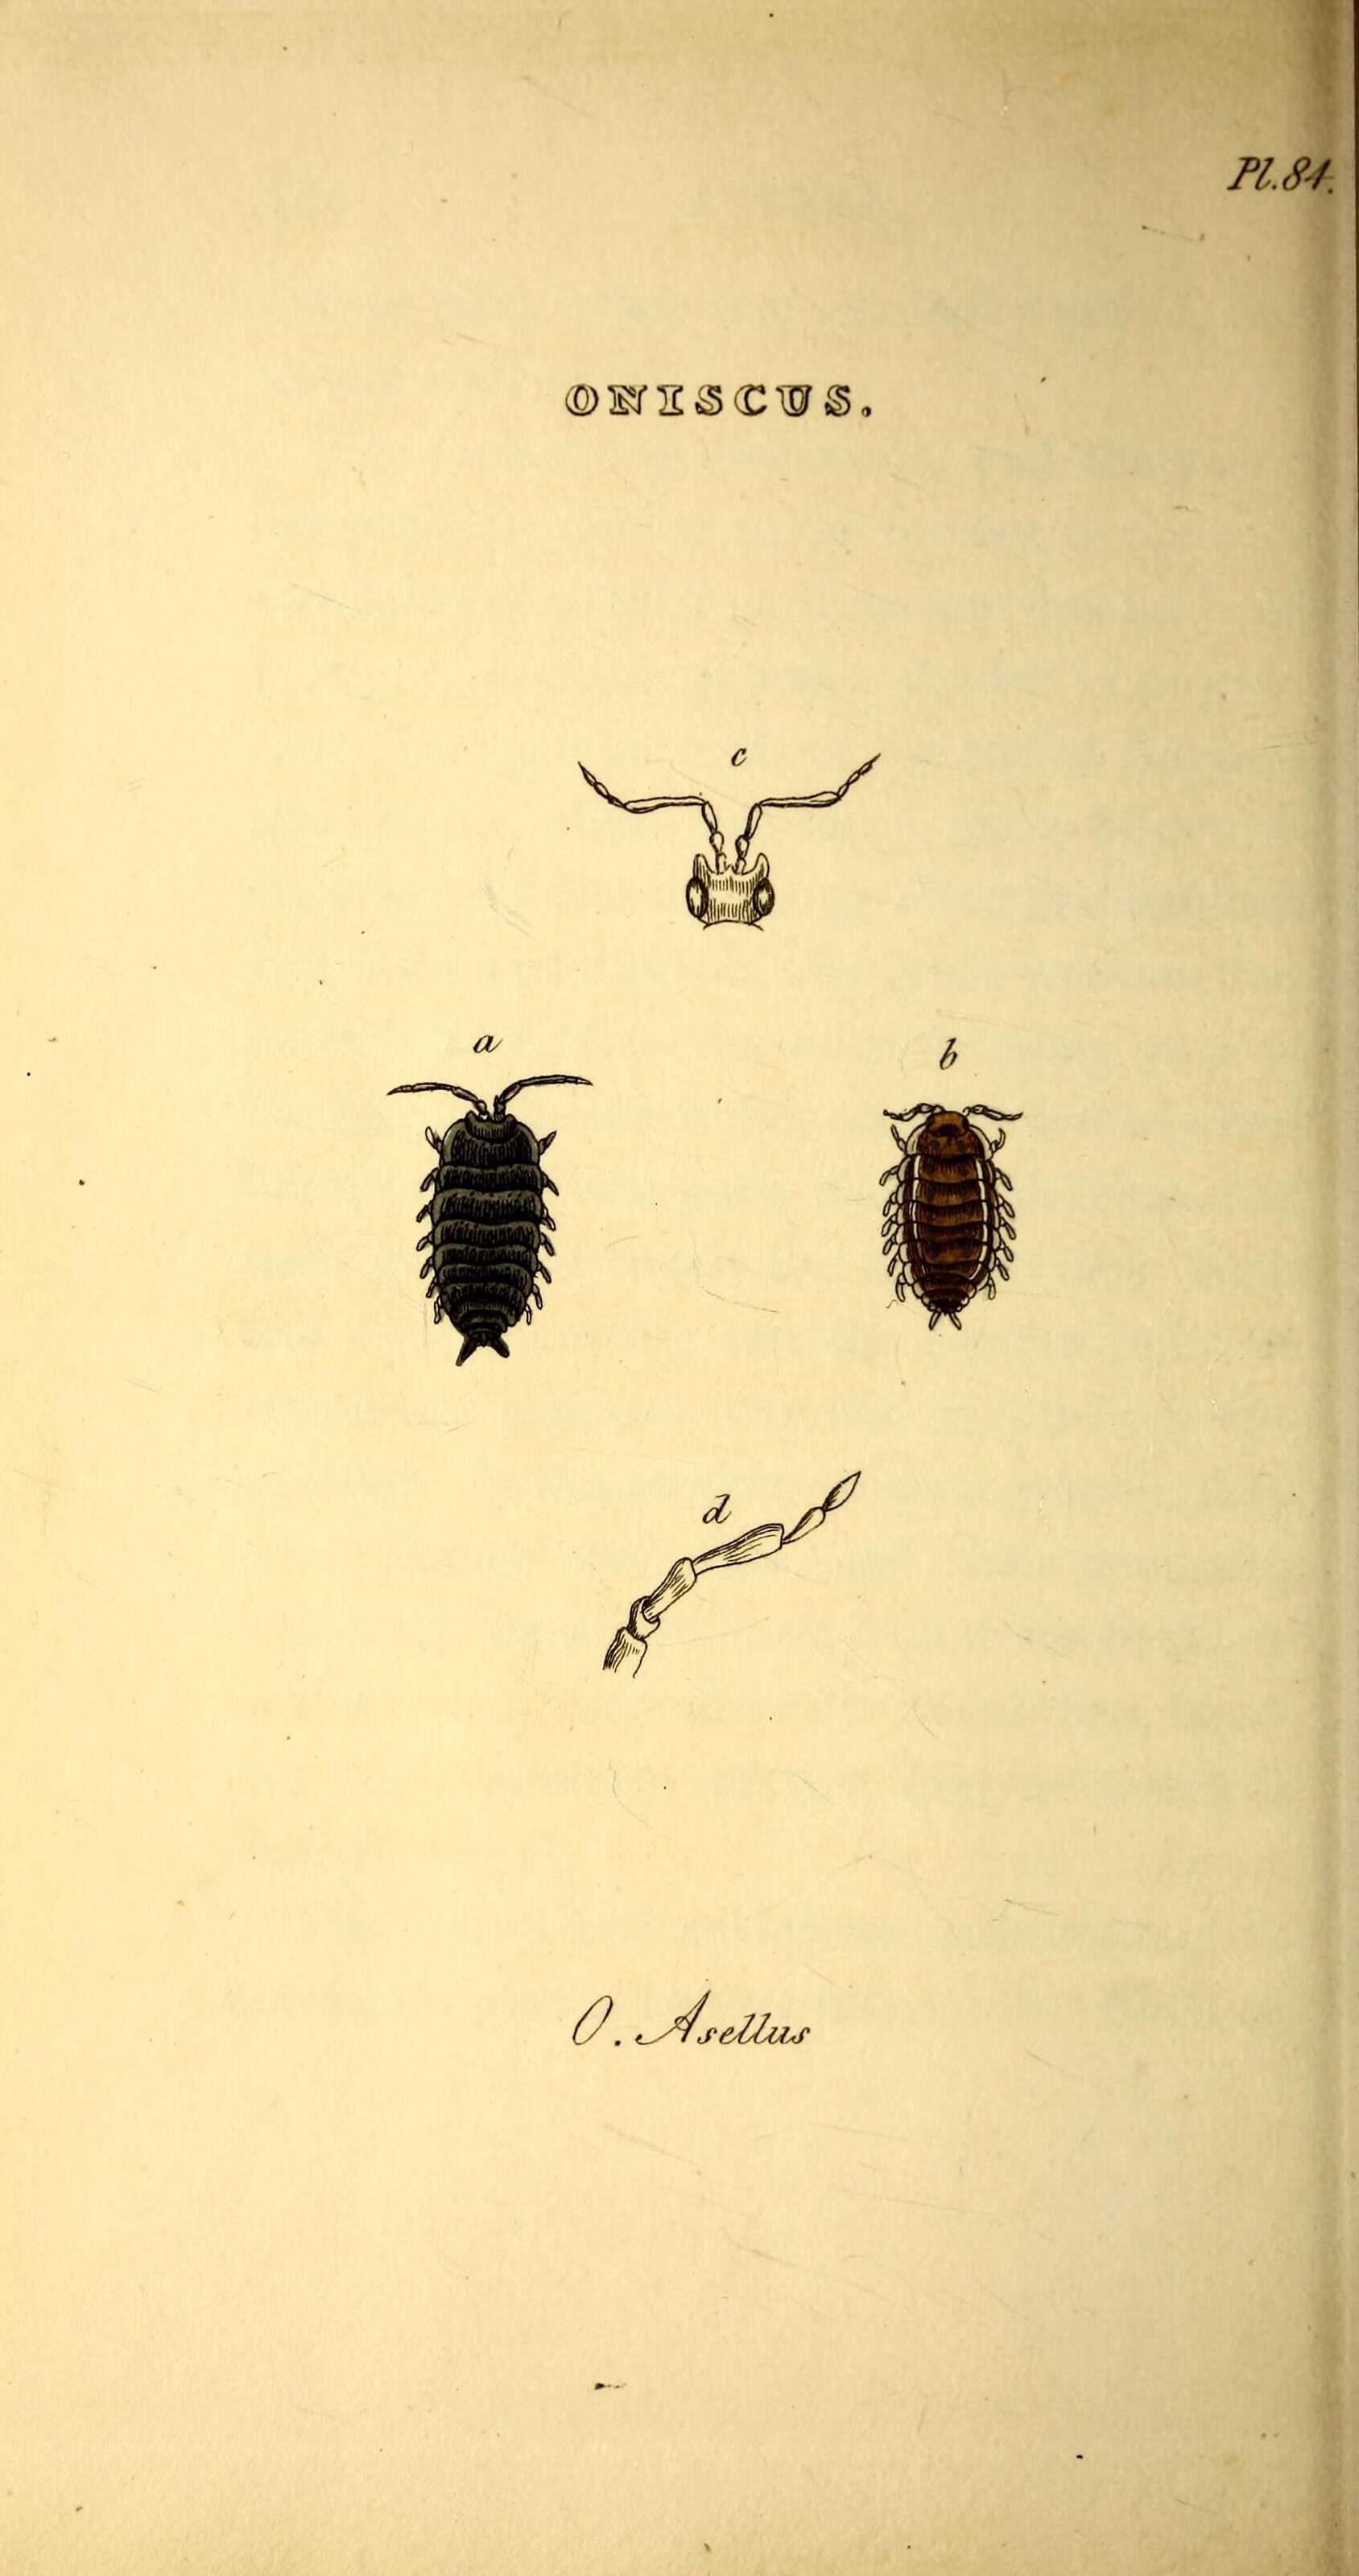 Image of sowbugs